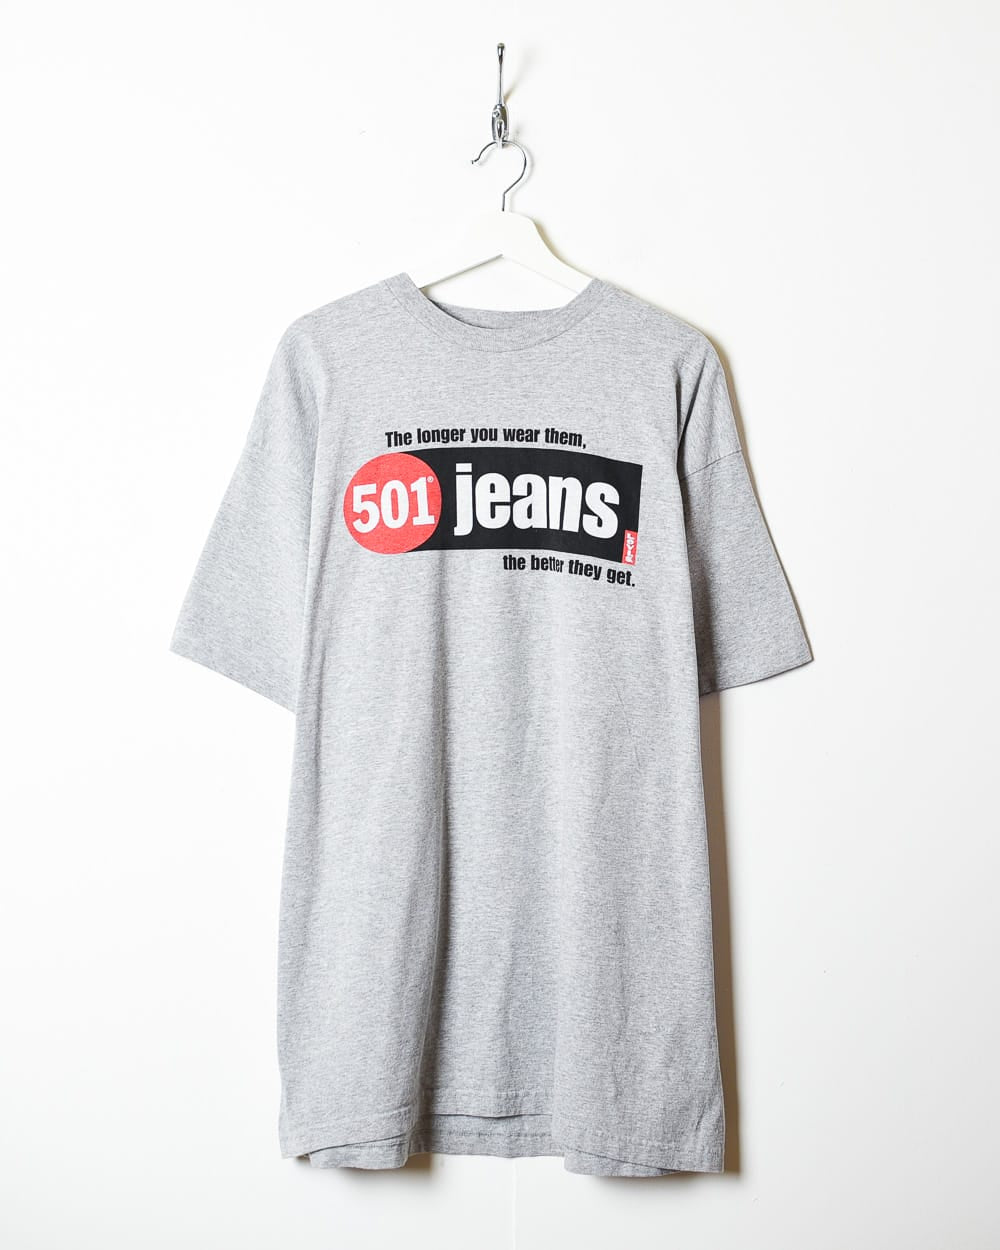 Stone Levi's Jeans T-Shirt - Large